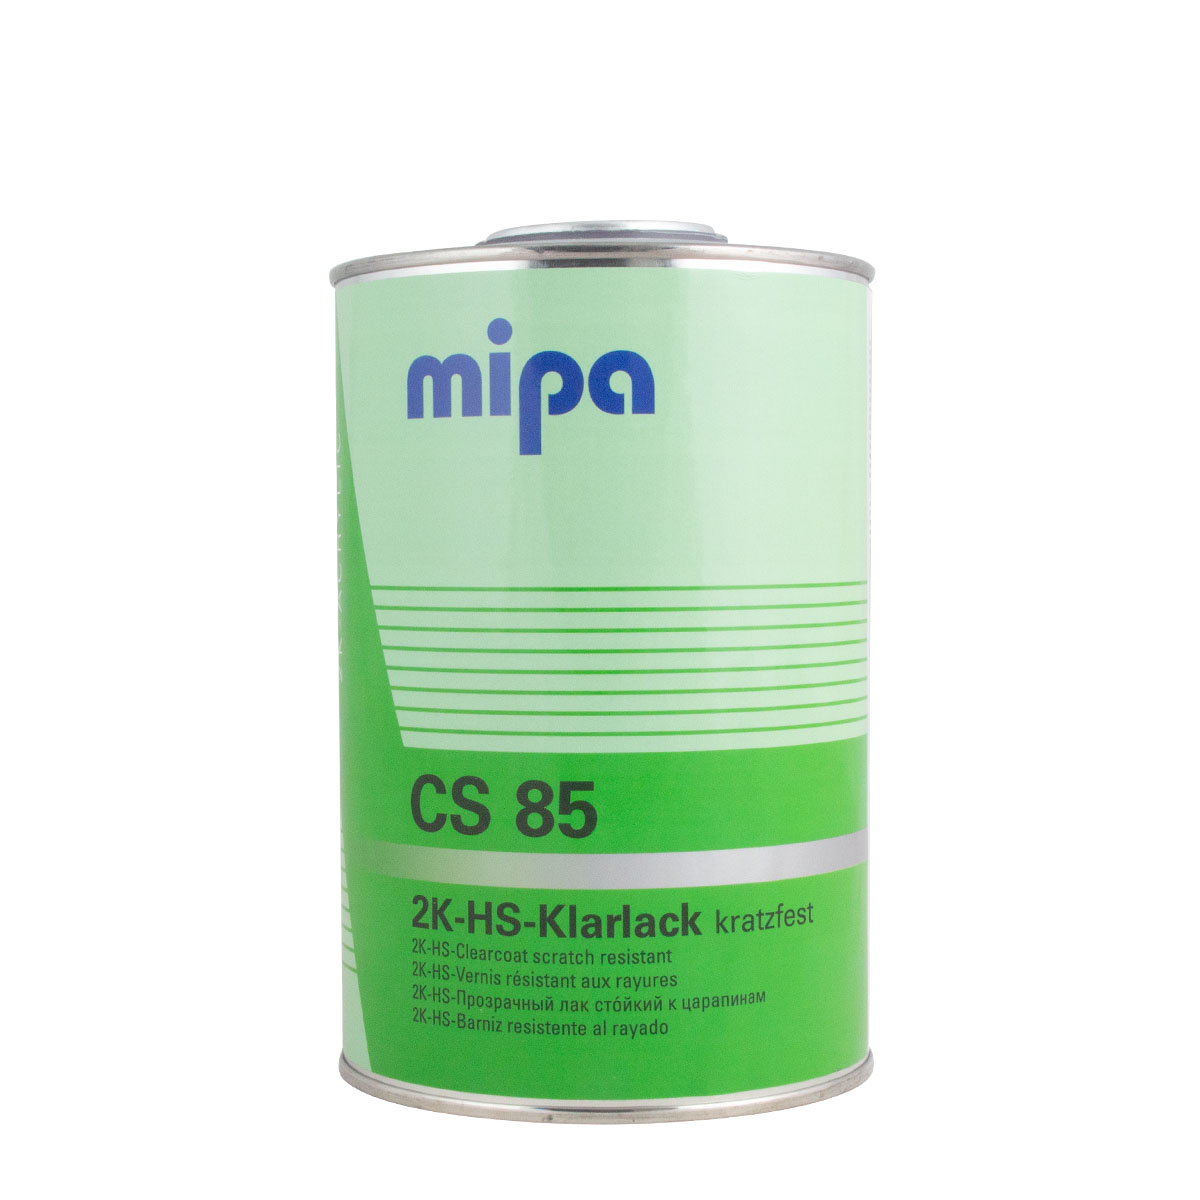 Mipa 2K-HS-Klarlack CS85 1L,  kratzfest, hochglänzend